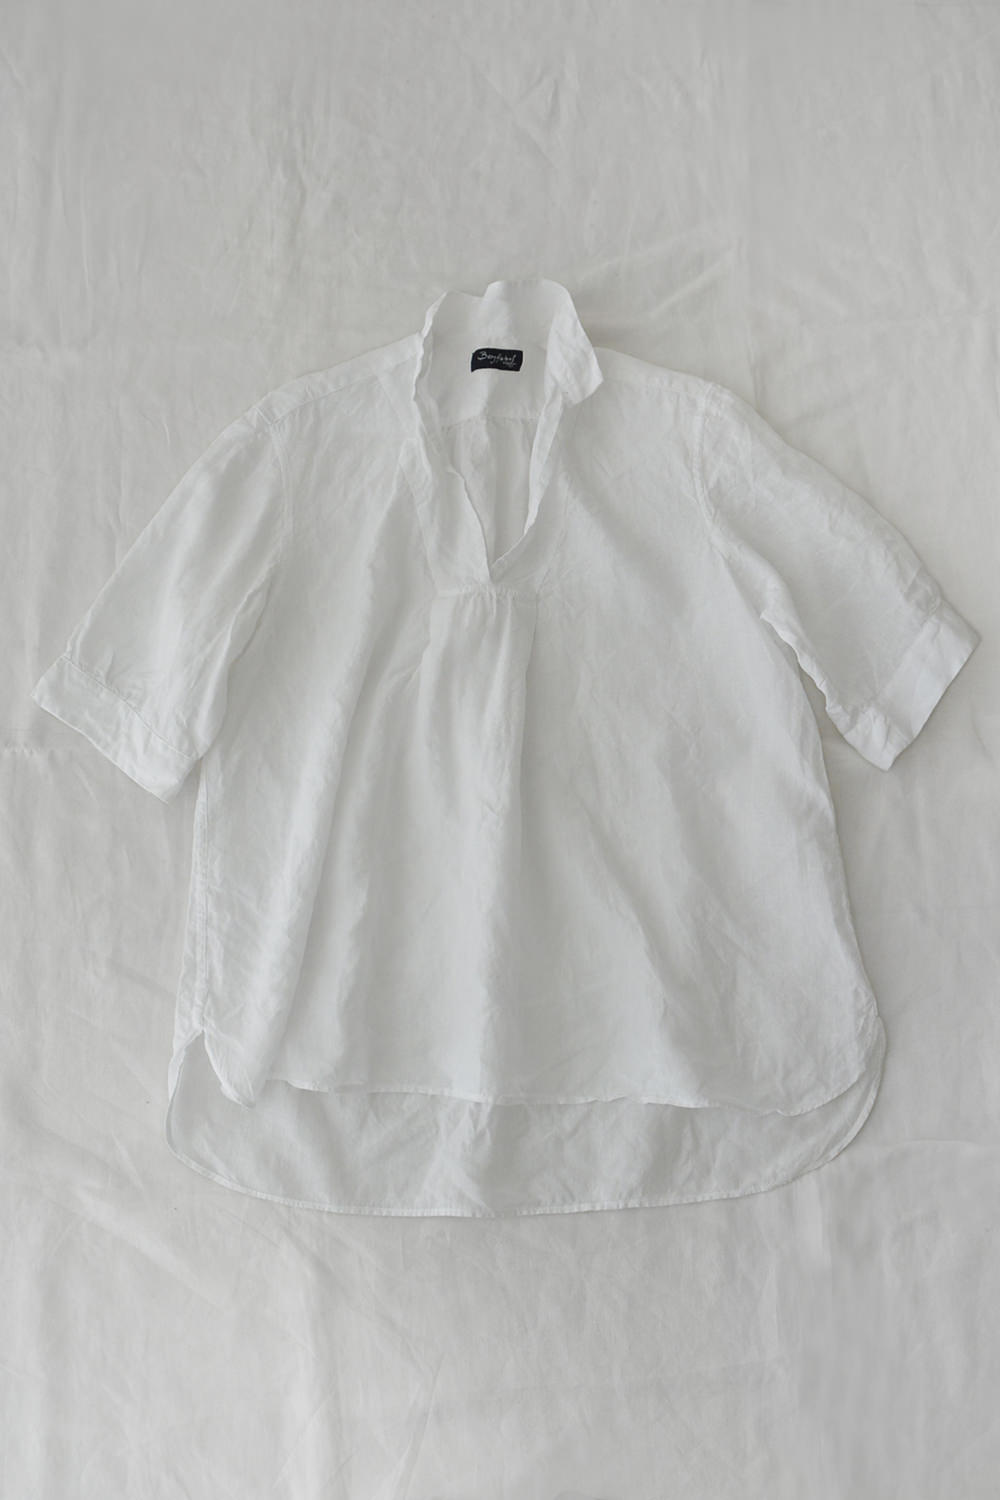 Bergfabel, Tyrol V Collar Shirt - White. Makie. Main.